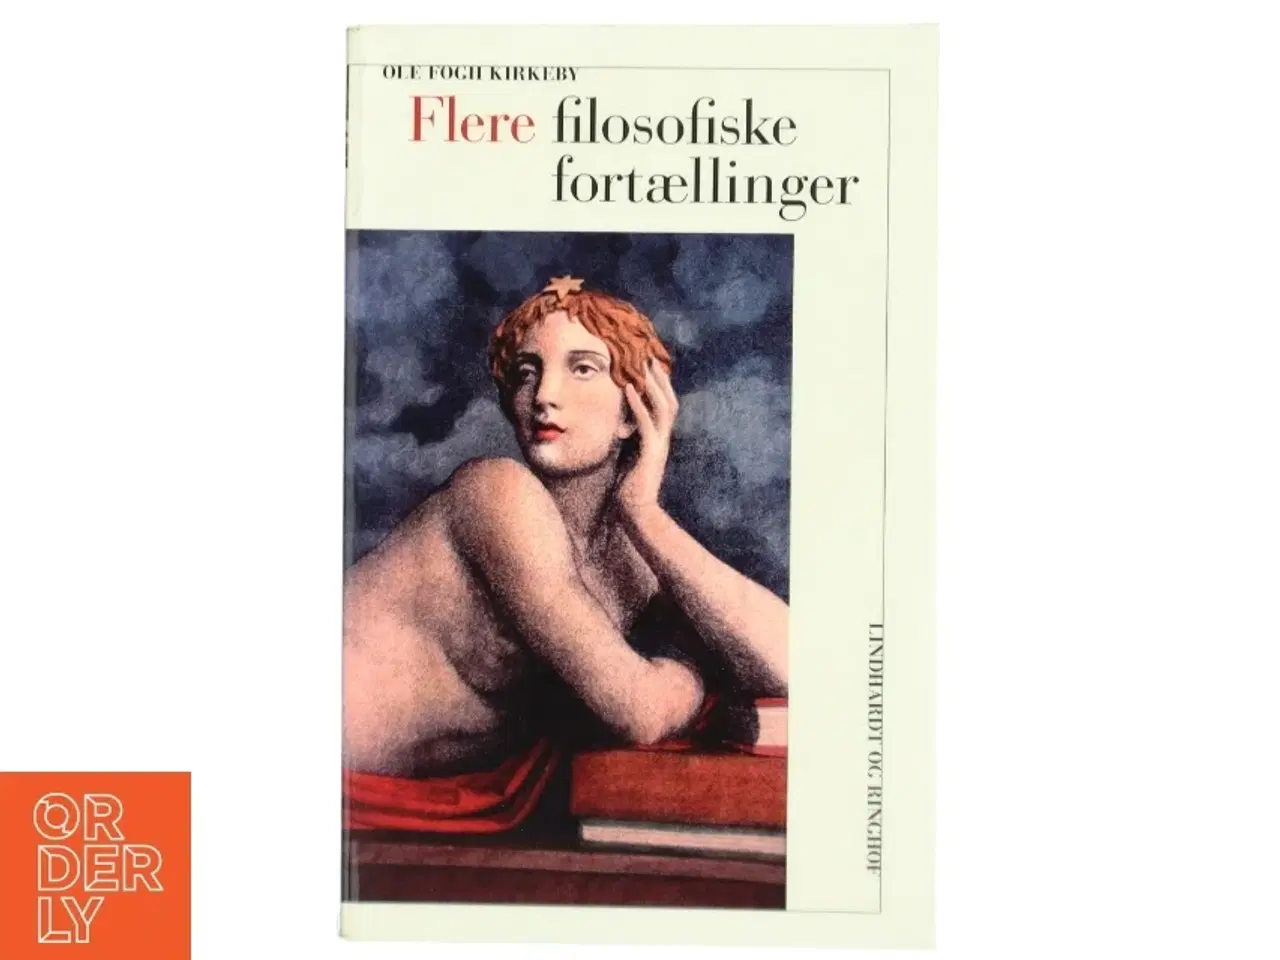 Billede 1 - 'Flere filosofiske fortællinger' af Ole Fogh Kirkeby (bog) fra Lindhardt og Ringhof